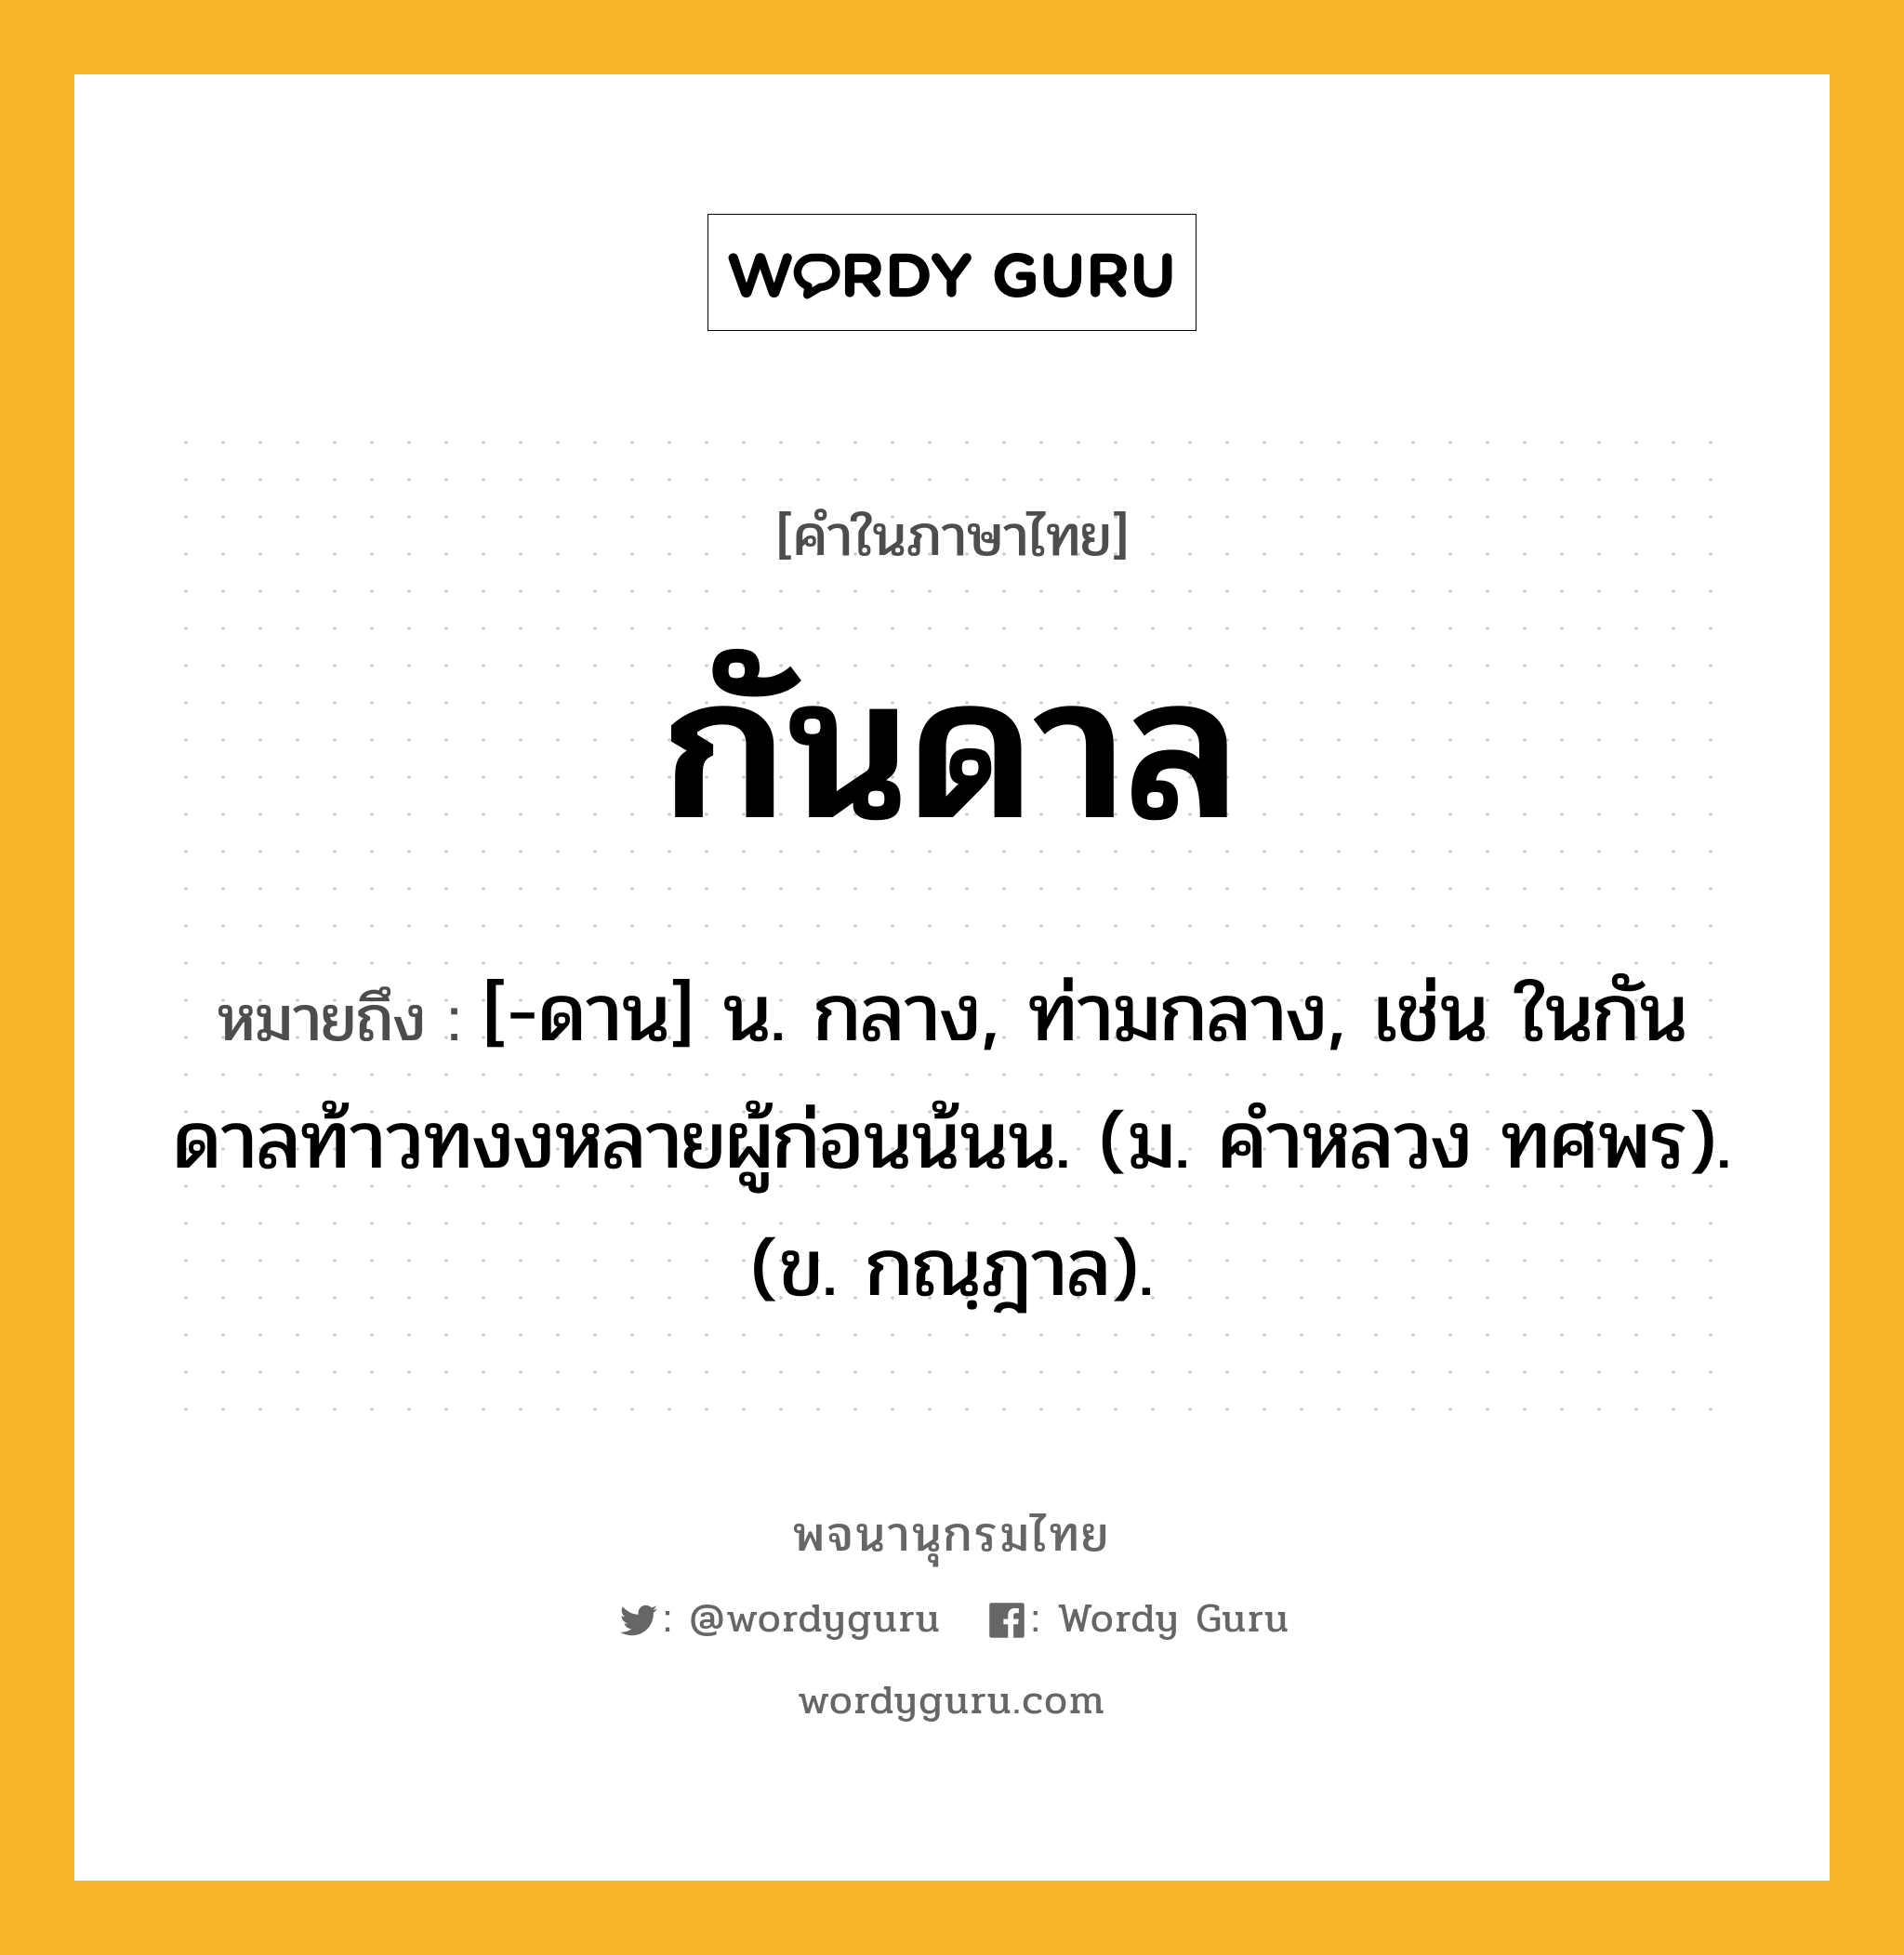 กันดาล ความหมาย หมายถึงอะไร?, คำในภาษาไทย กันดาล หมายถึง [-ดาน] น. กลาง, ท่ามกลาง, เช่น ในกันดาลท้าวทงงหลายผู้ก่อนน้นน. (ม. คําหลวง ทศพร). (ข. กณฺฎาล).